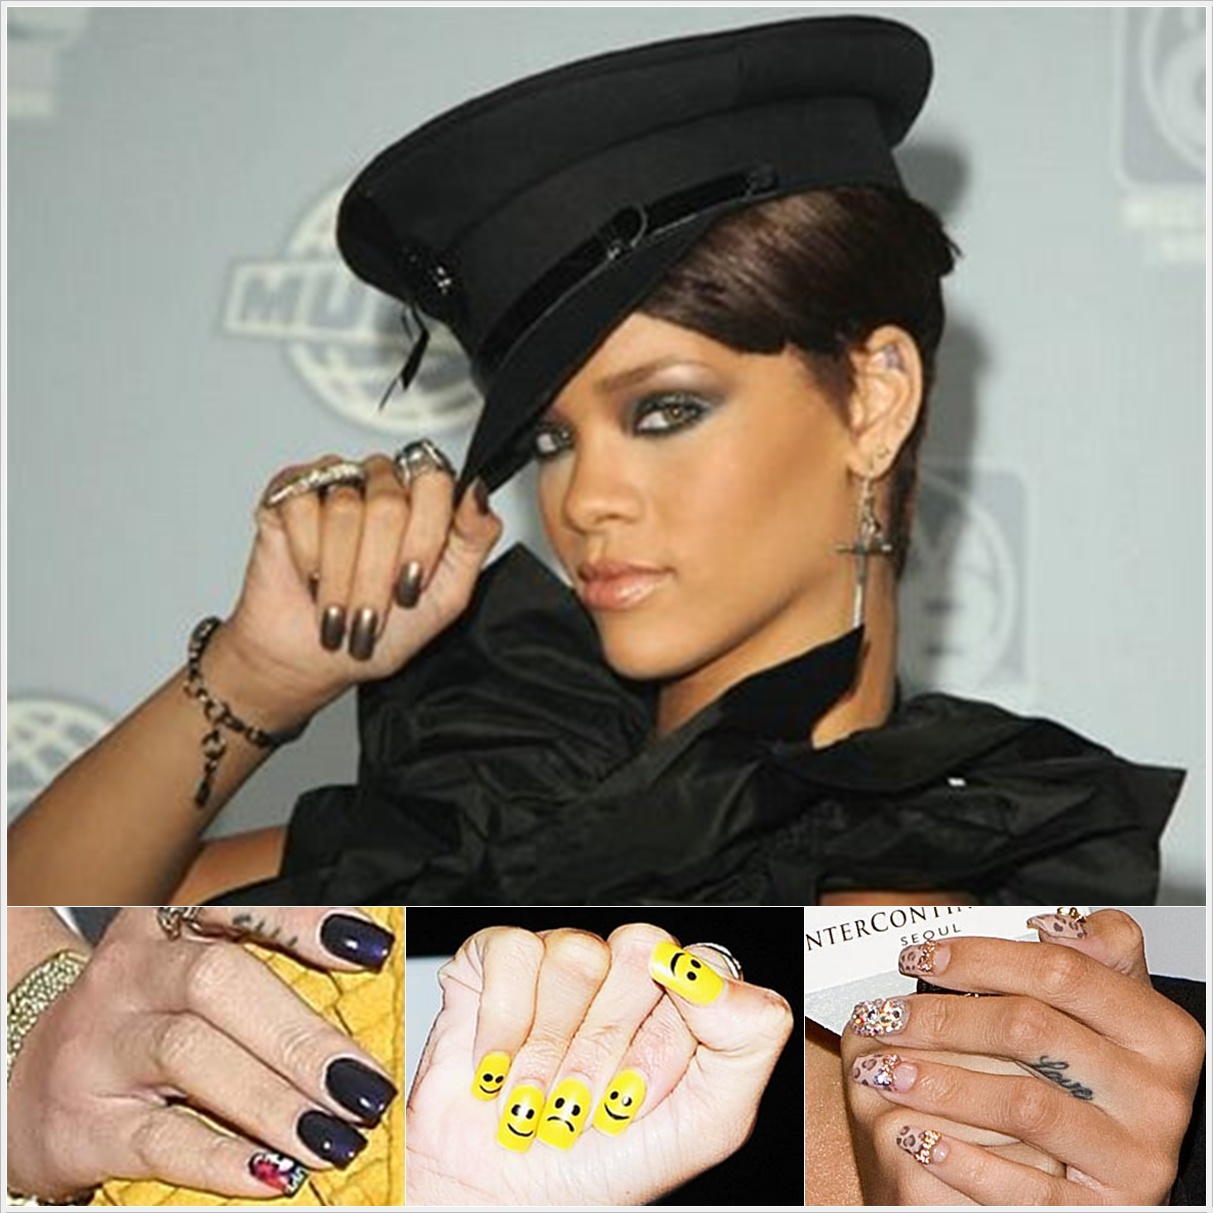 http://2.bp.blogspot.com/-W1ot_epWRhY/UEU1HCakjVI/AAAAAAAACrY/py2zpCVnDOk/s1600/Inspire-se+-+Unhas+Rihanna+1.jpg